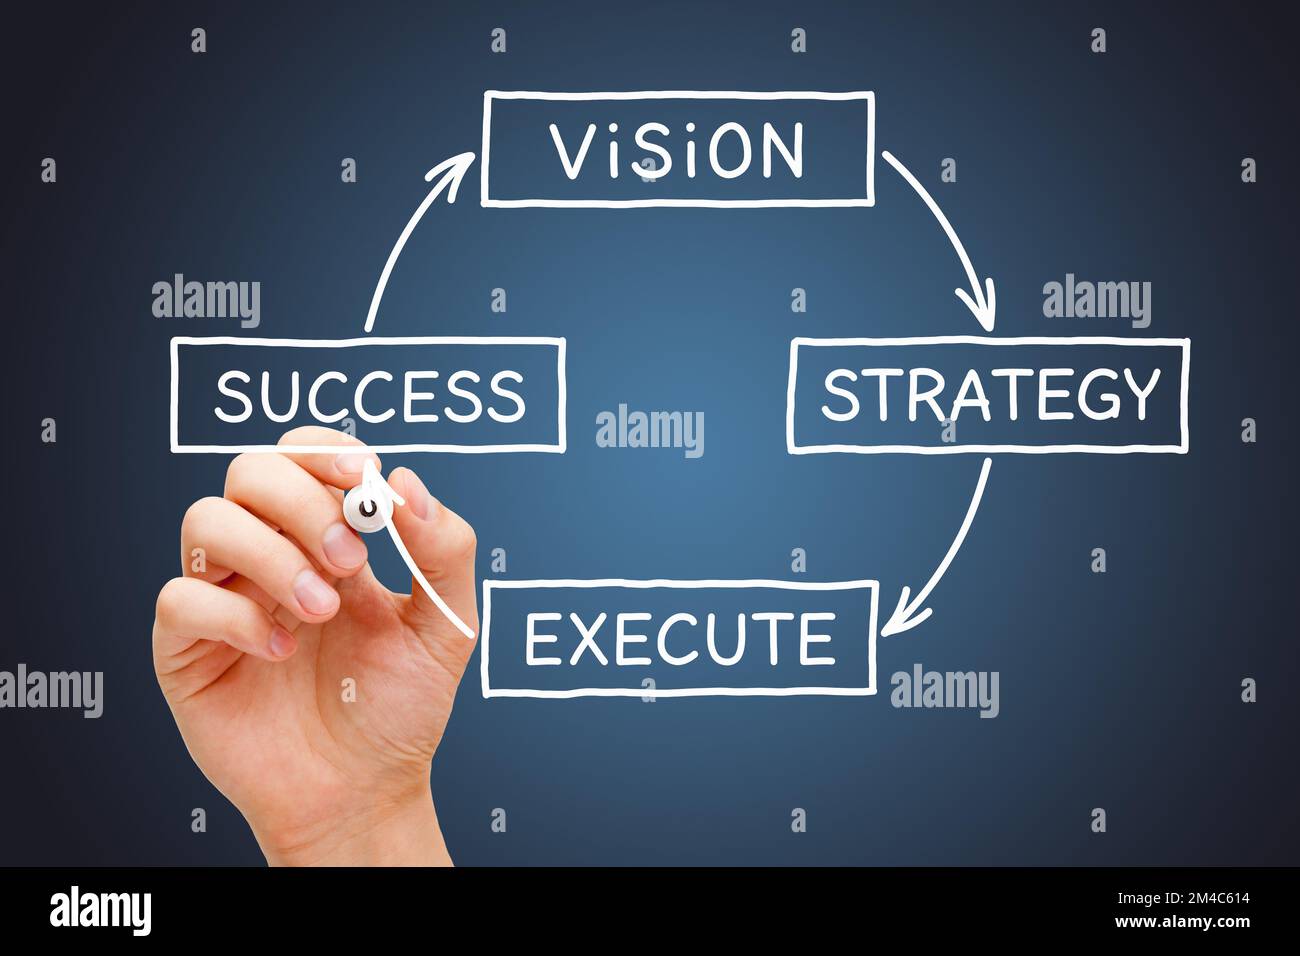 Zeichnen Sie mit der Hand ein Geschäftsdiagramm mit dem Prozess von der Vision über die Strategie und Umsetzung bis zum Erfolg. Stockfoto